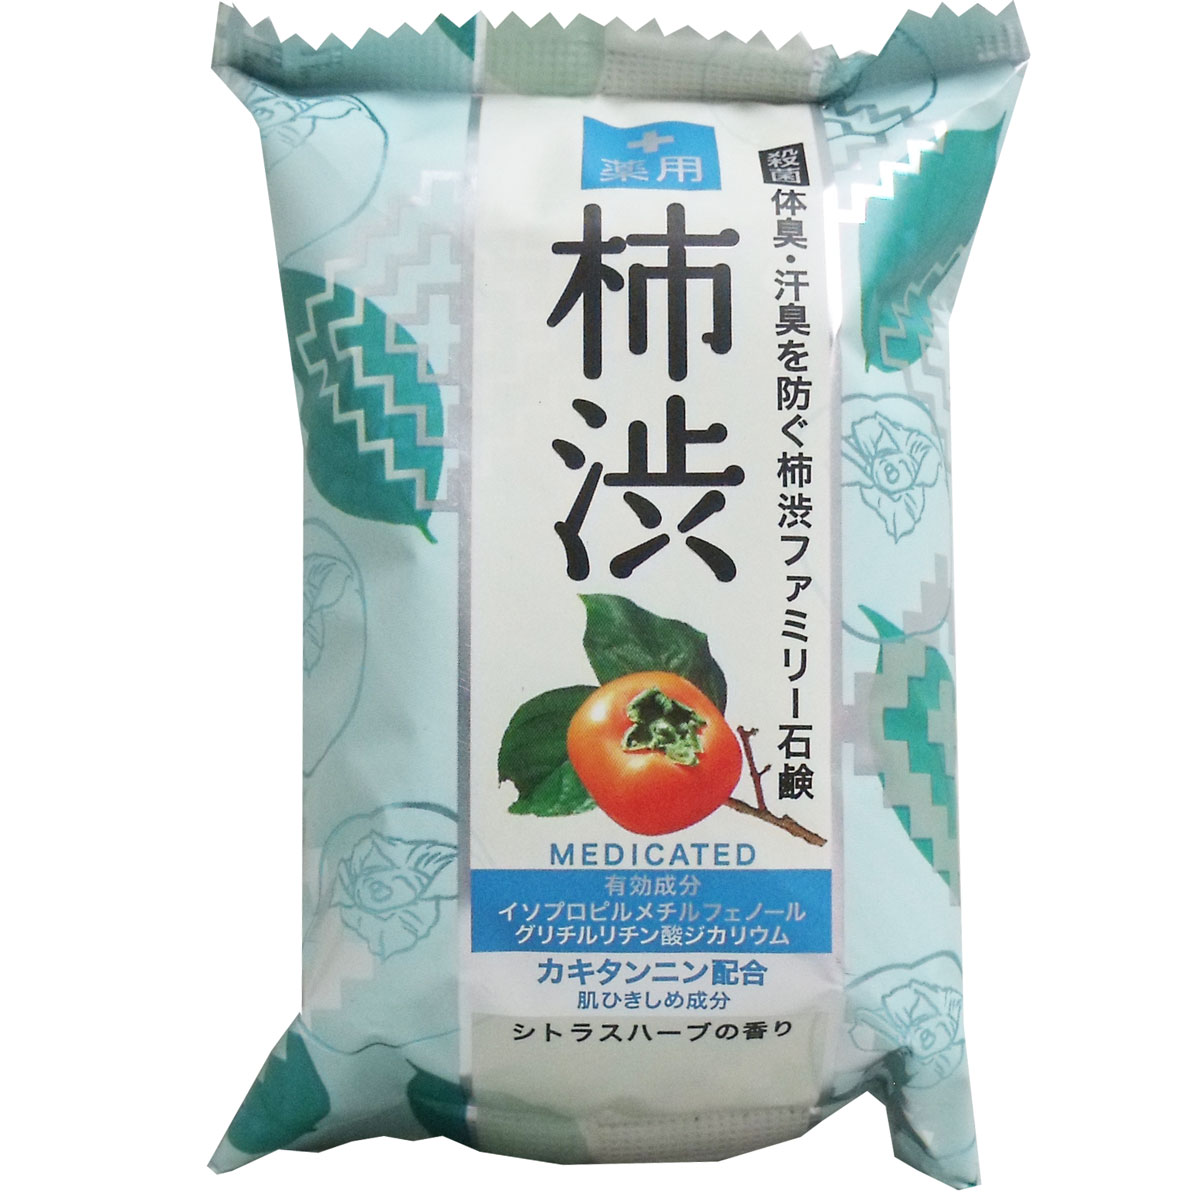 [廃盤]薬用 柿渋ファミリー石鹸 80g